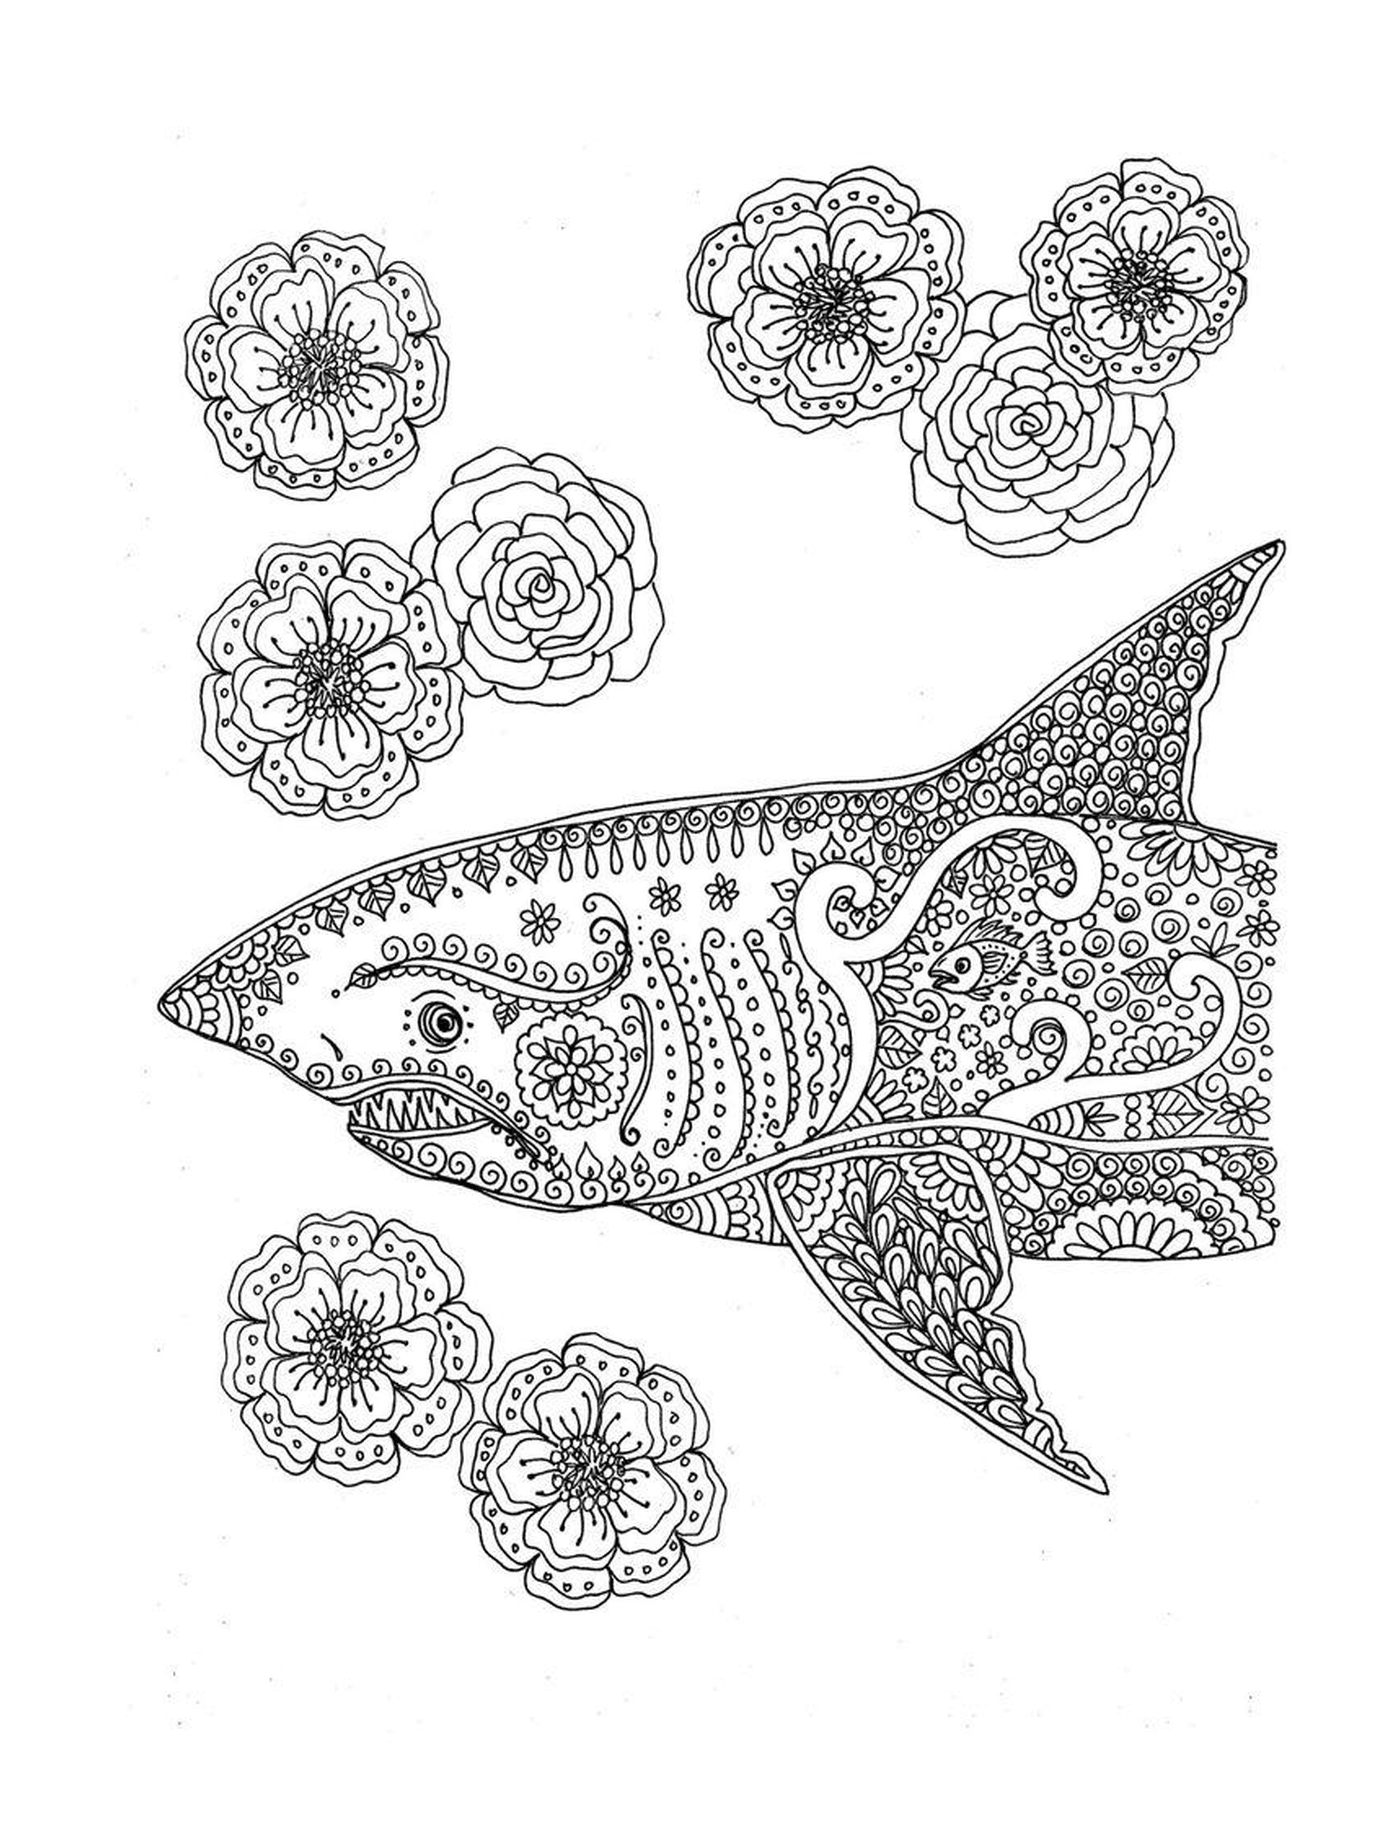  Tiburón decorado con motivos florales 